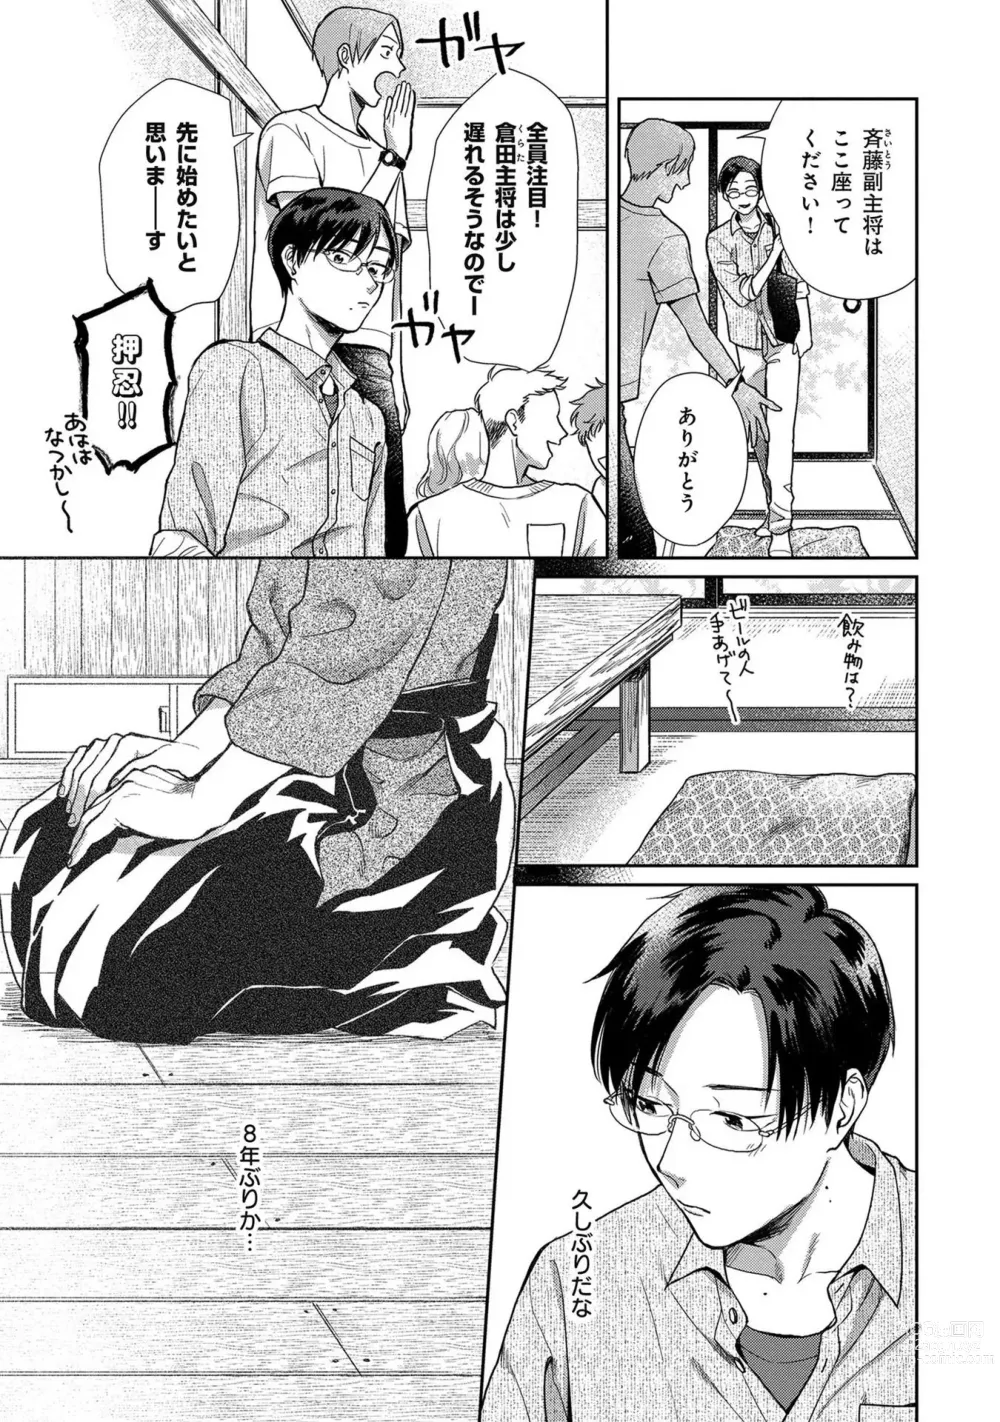 Page 6 of manga Itsukushimu, Sawo Shika no Koe